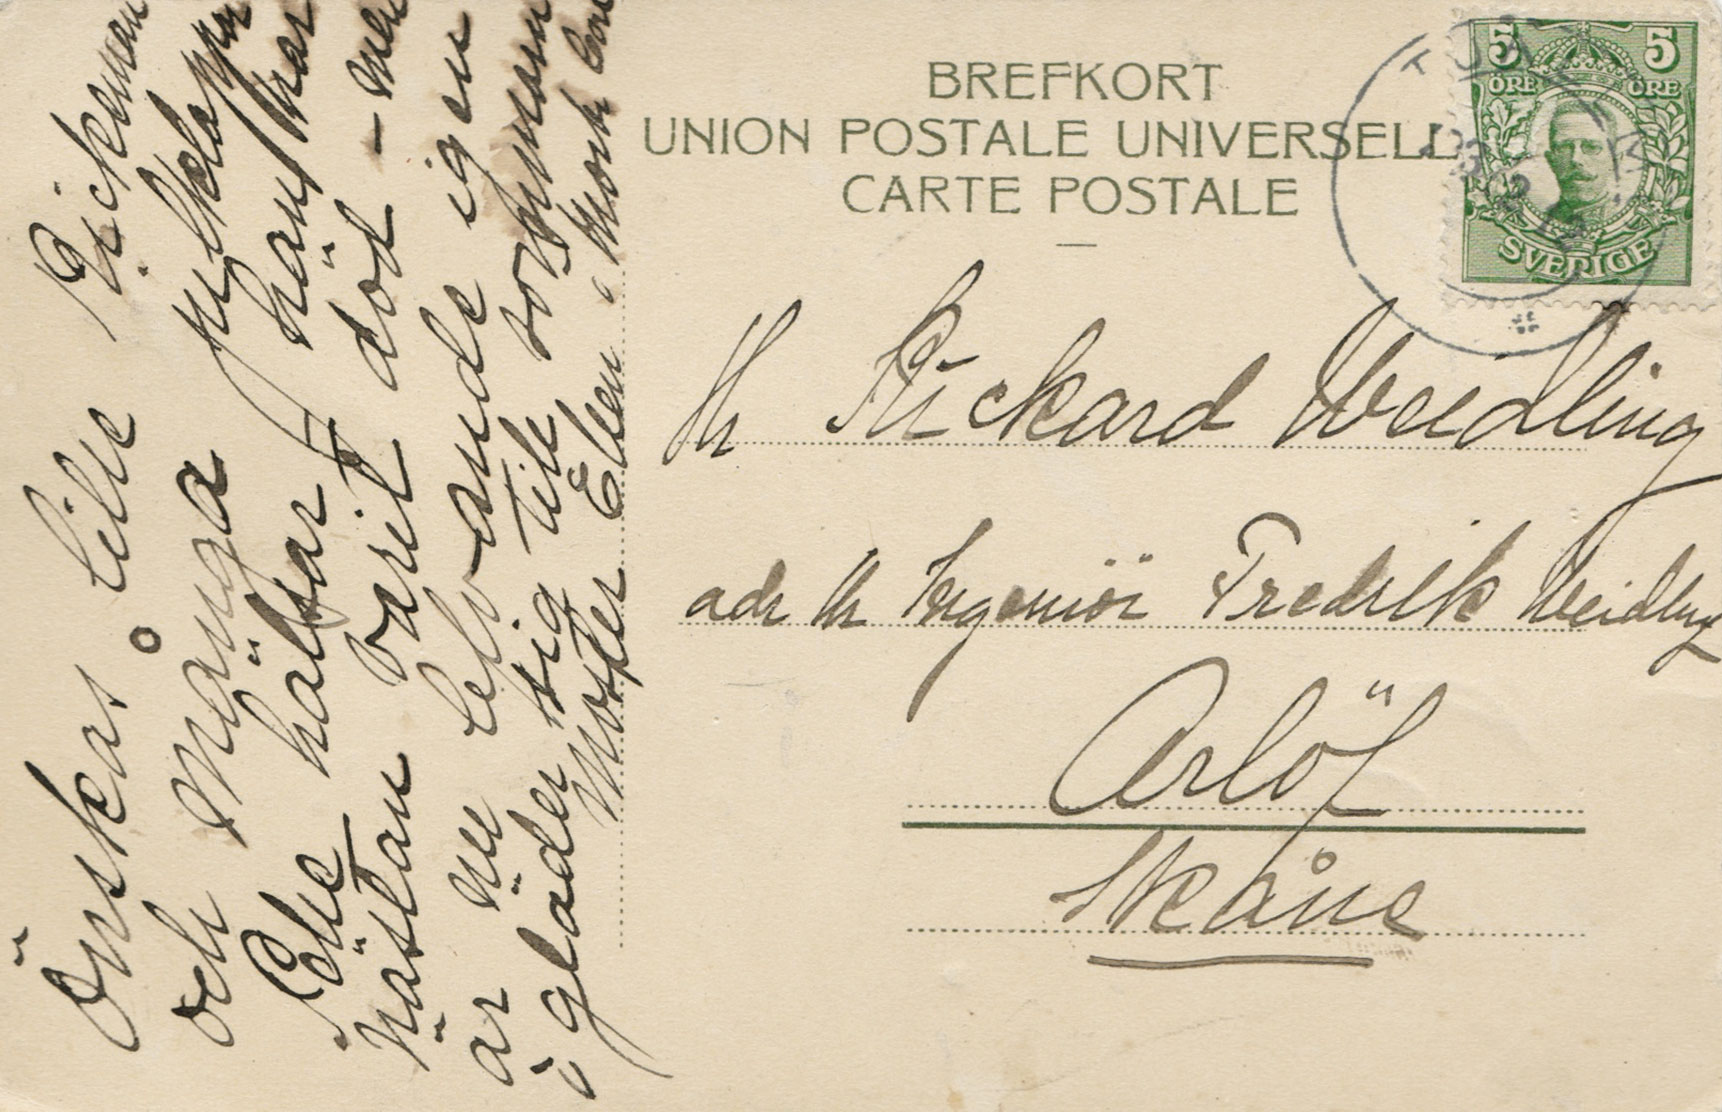 Handwritten message and stamp